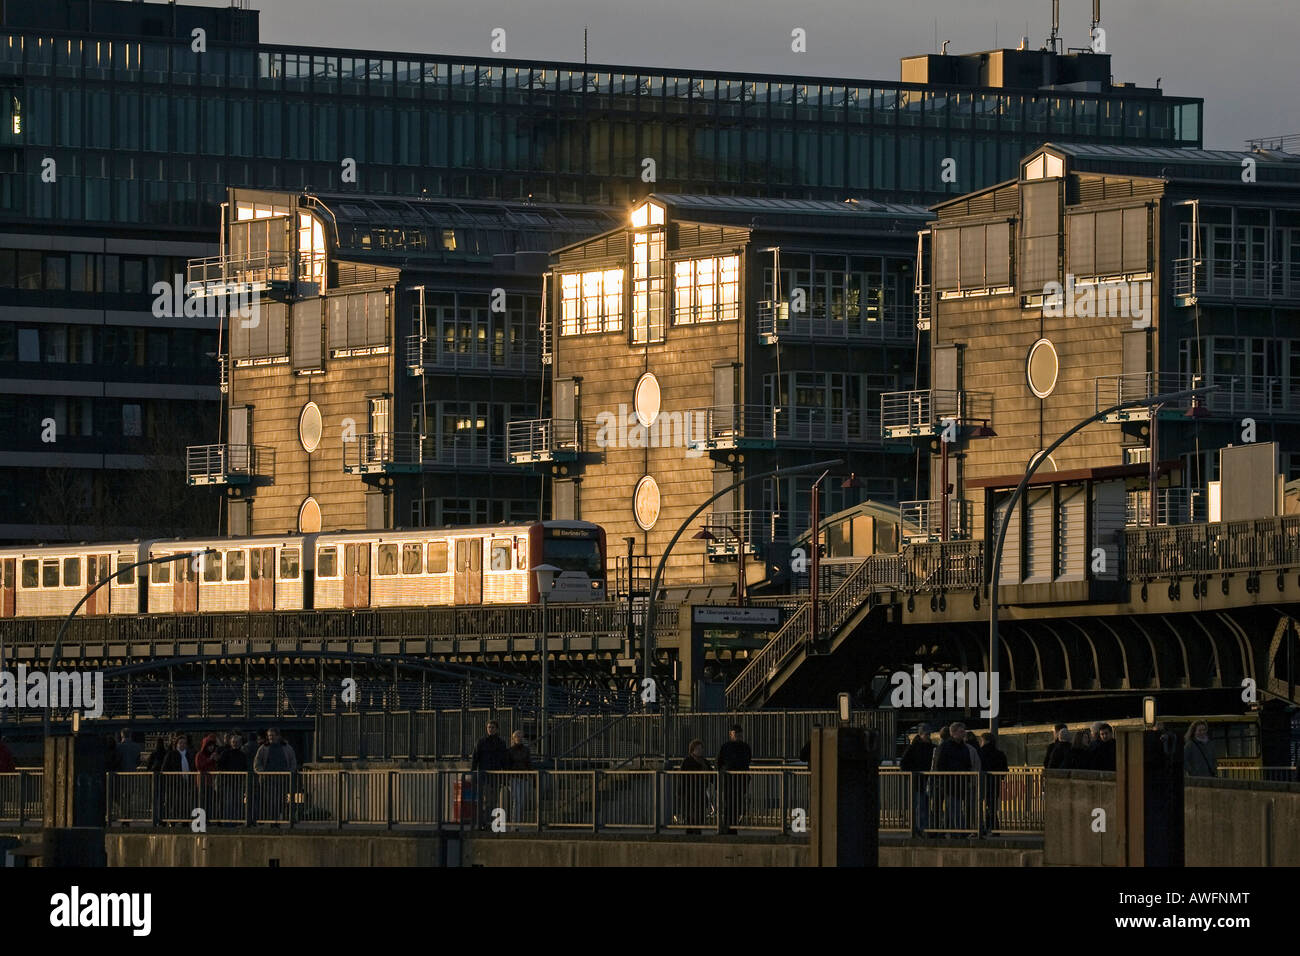 U-Bahn, vorbei an den modernen Verlag Gruner und Jahr Verlag in Hamburg im Abendlicht - Hamburger Hafen, Deutschland Stockfoto